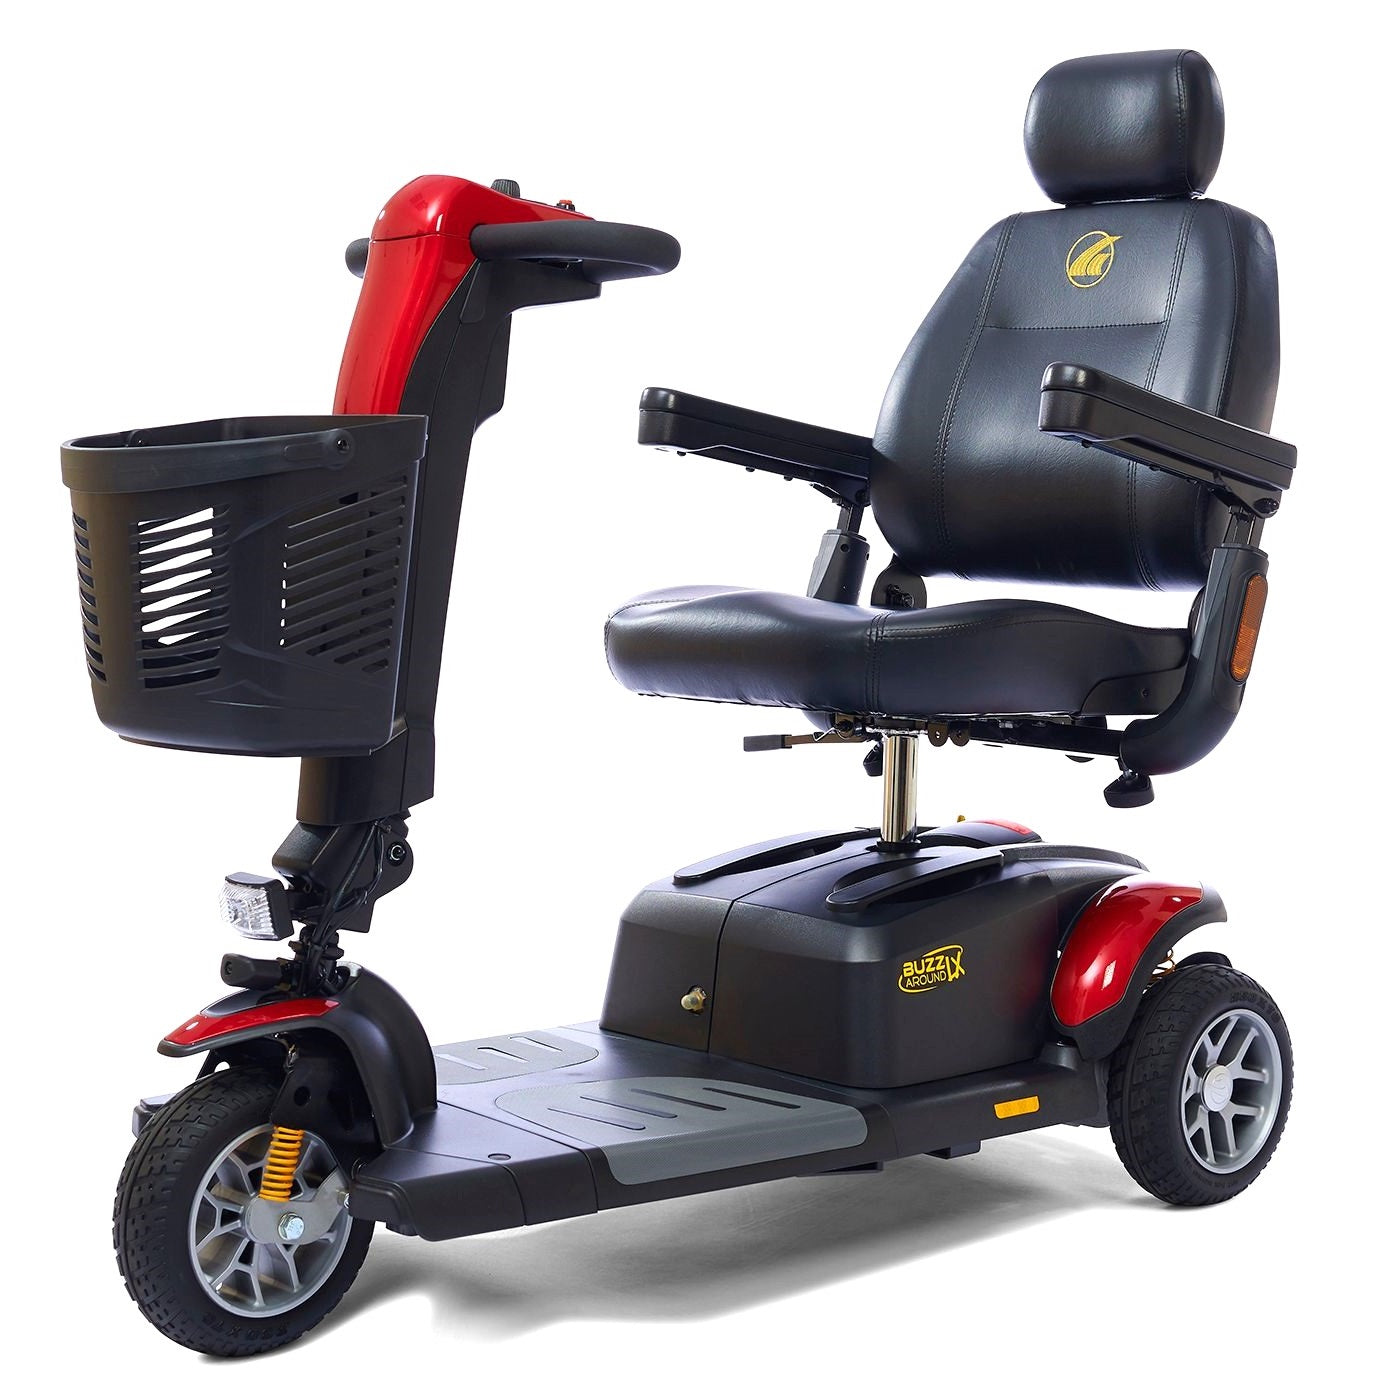 Buzzaround LX 3-Wheel Mobility Scooter - GB119